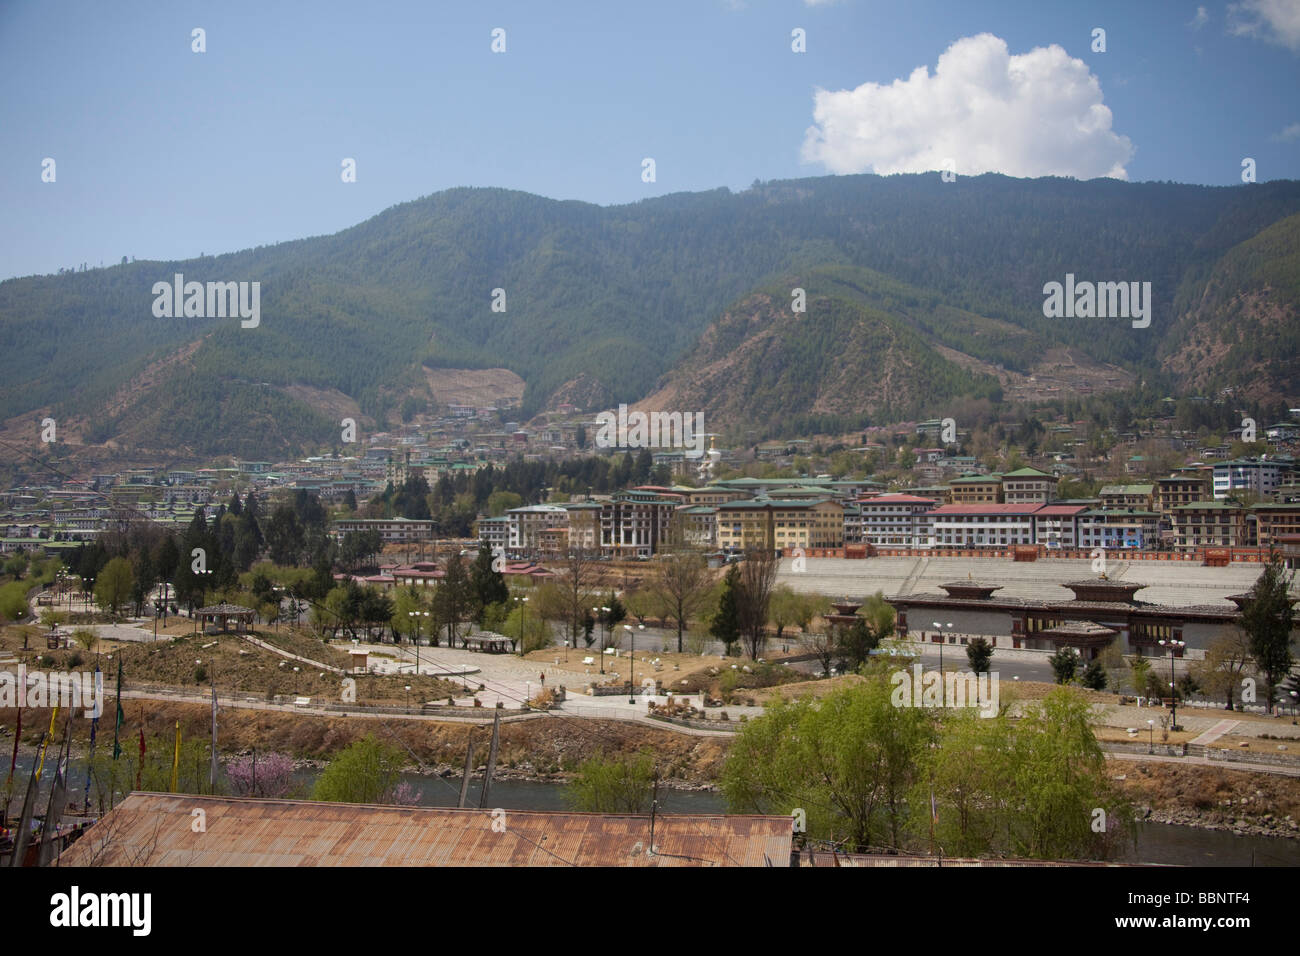 Gesamtansicht der Hauptstadt Thimphu Stadt von Bhutan, sonnigen Frühlingstag, Gründächer Stadtbild. 91059 Bhutan-Thimphu Stockfoto